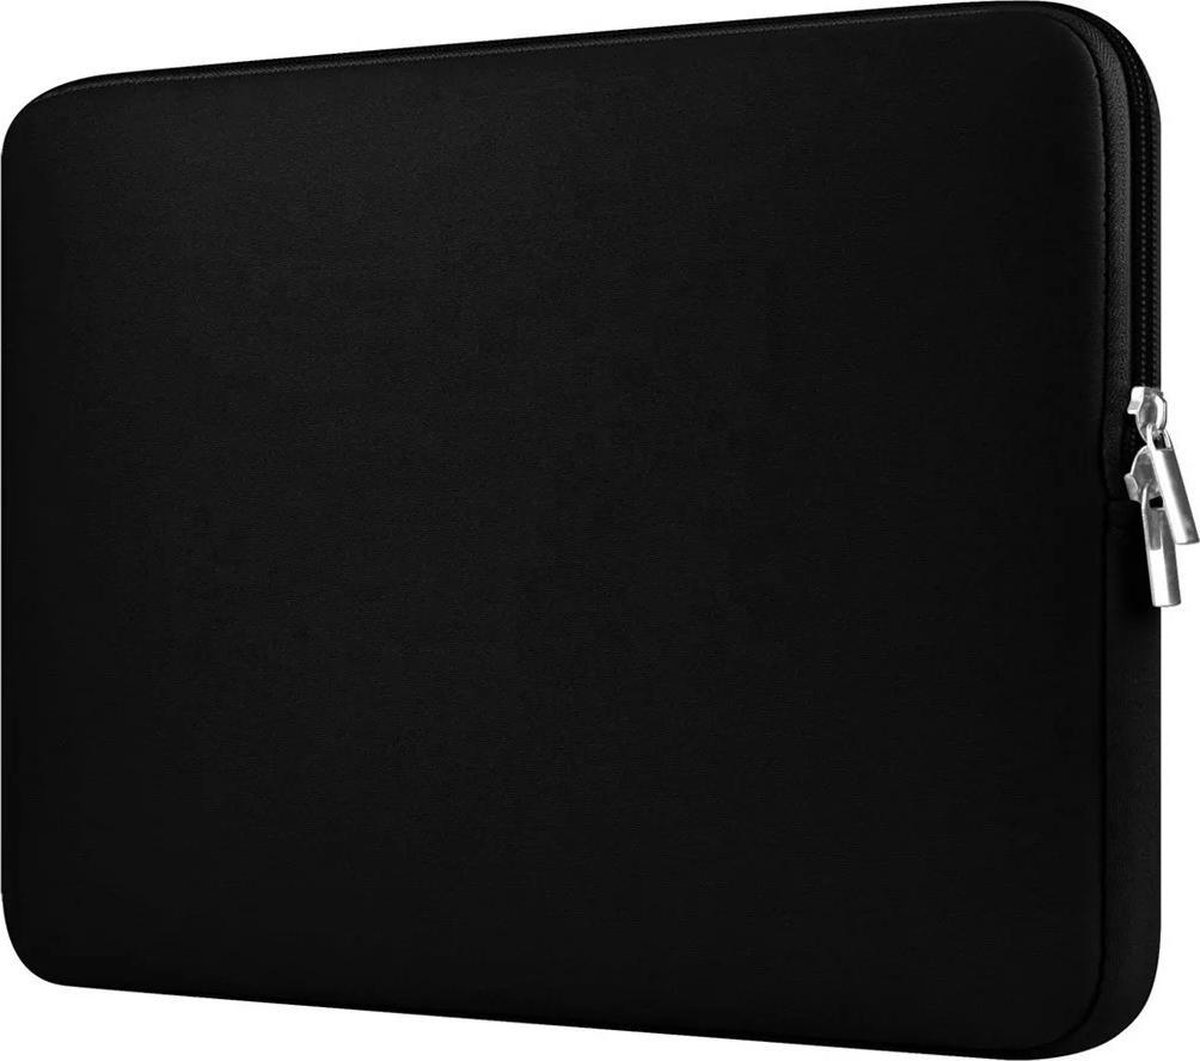 Spatwaterdichte laptopsleeve – 16 inch- dubbele ritssluiting- zwart kleur - unisex - Foam